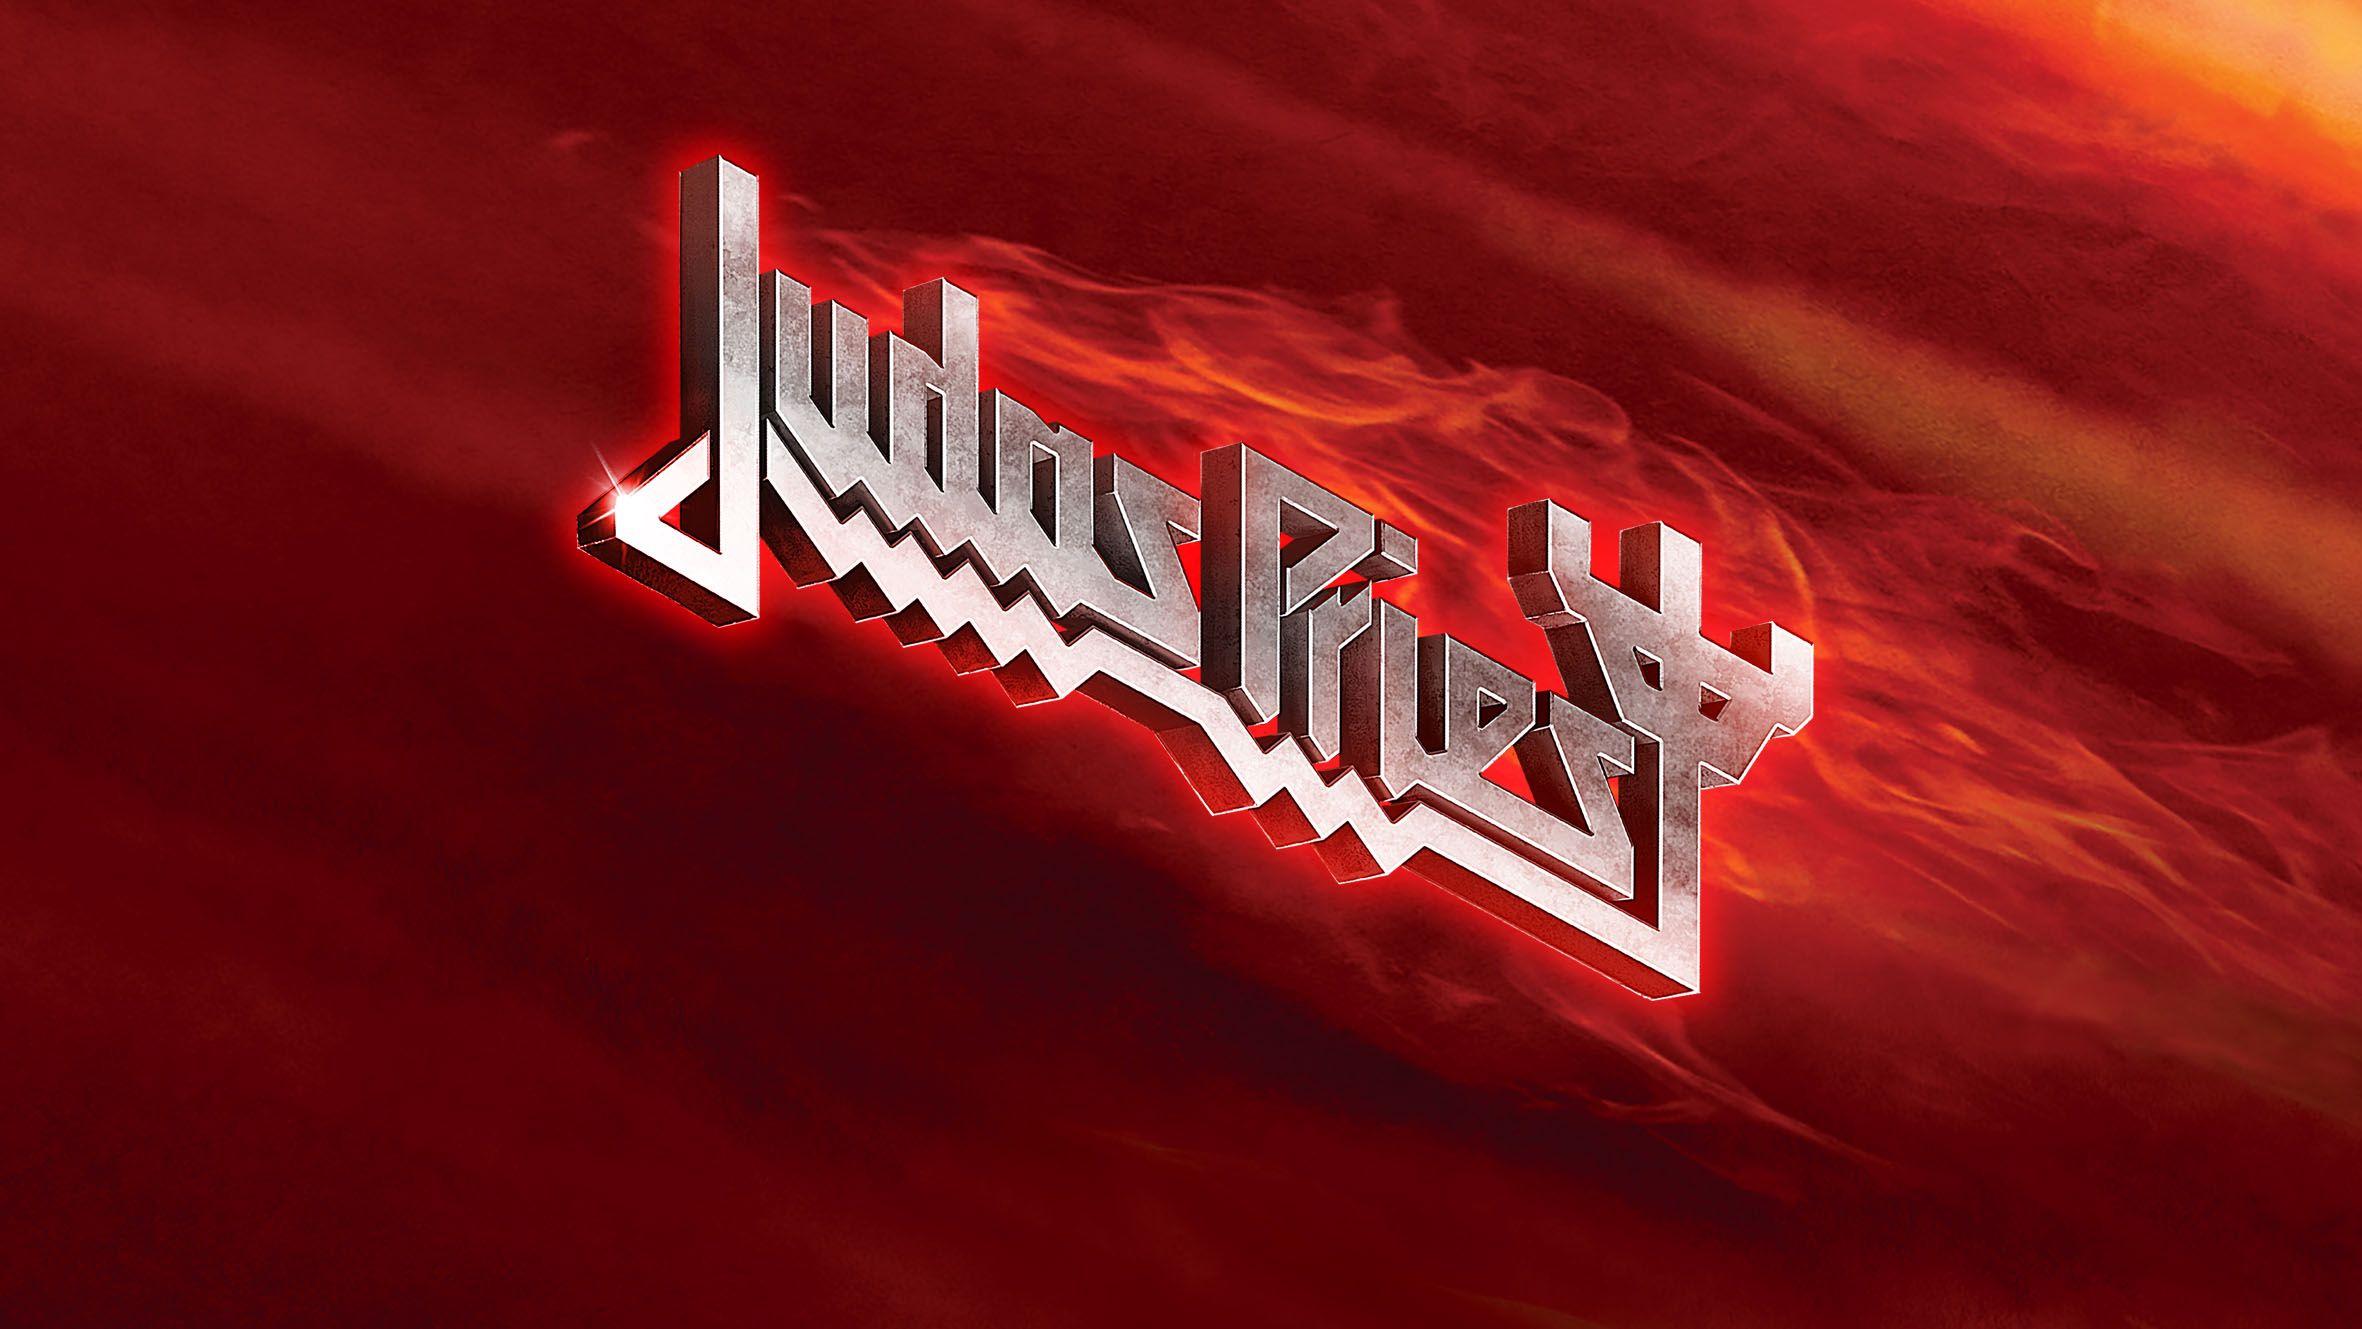 Judas Priest Logo - JudasPriest.com :: The Official Judas Priest Website